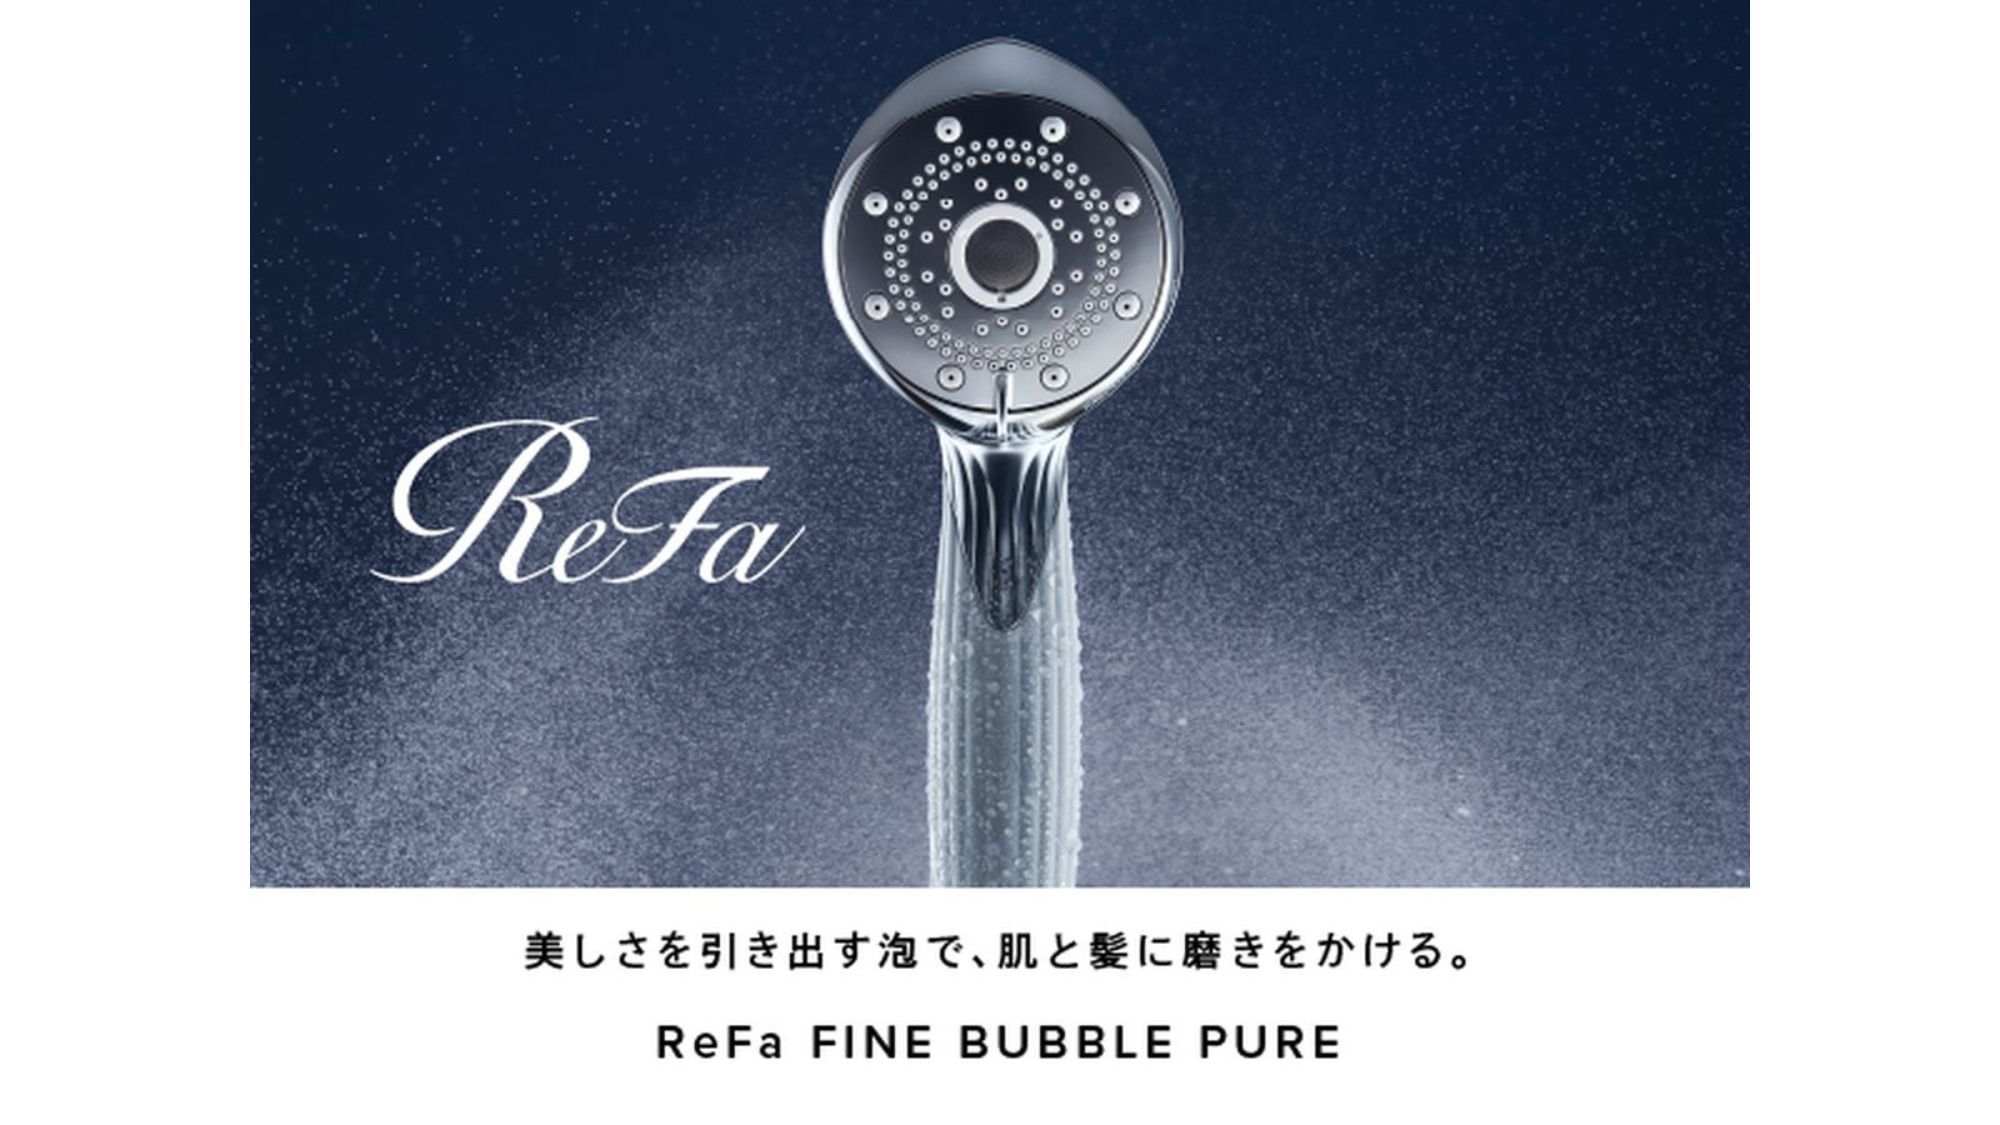 【客室】シャワーヘッドはReFa FINE BUBBLE PUREを採用